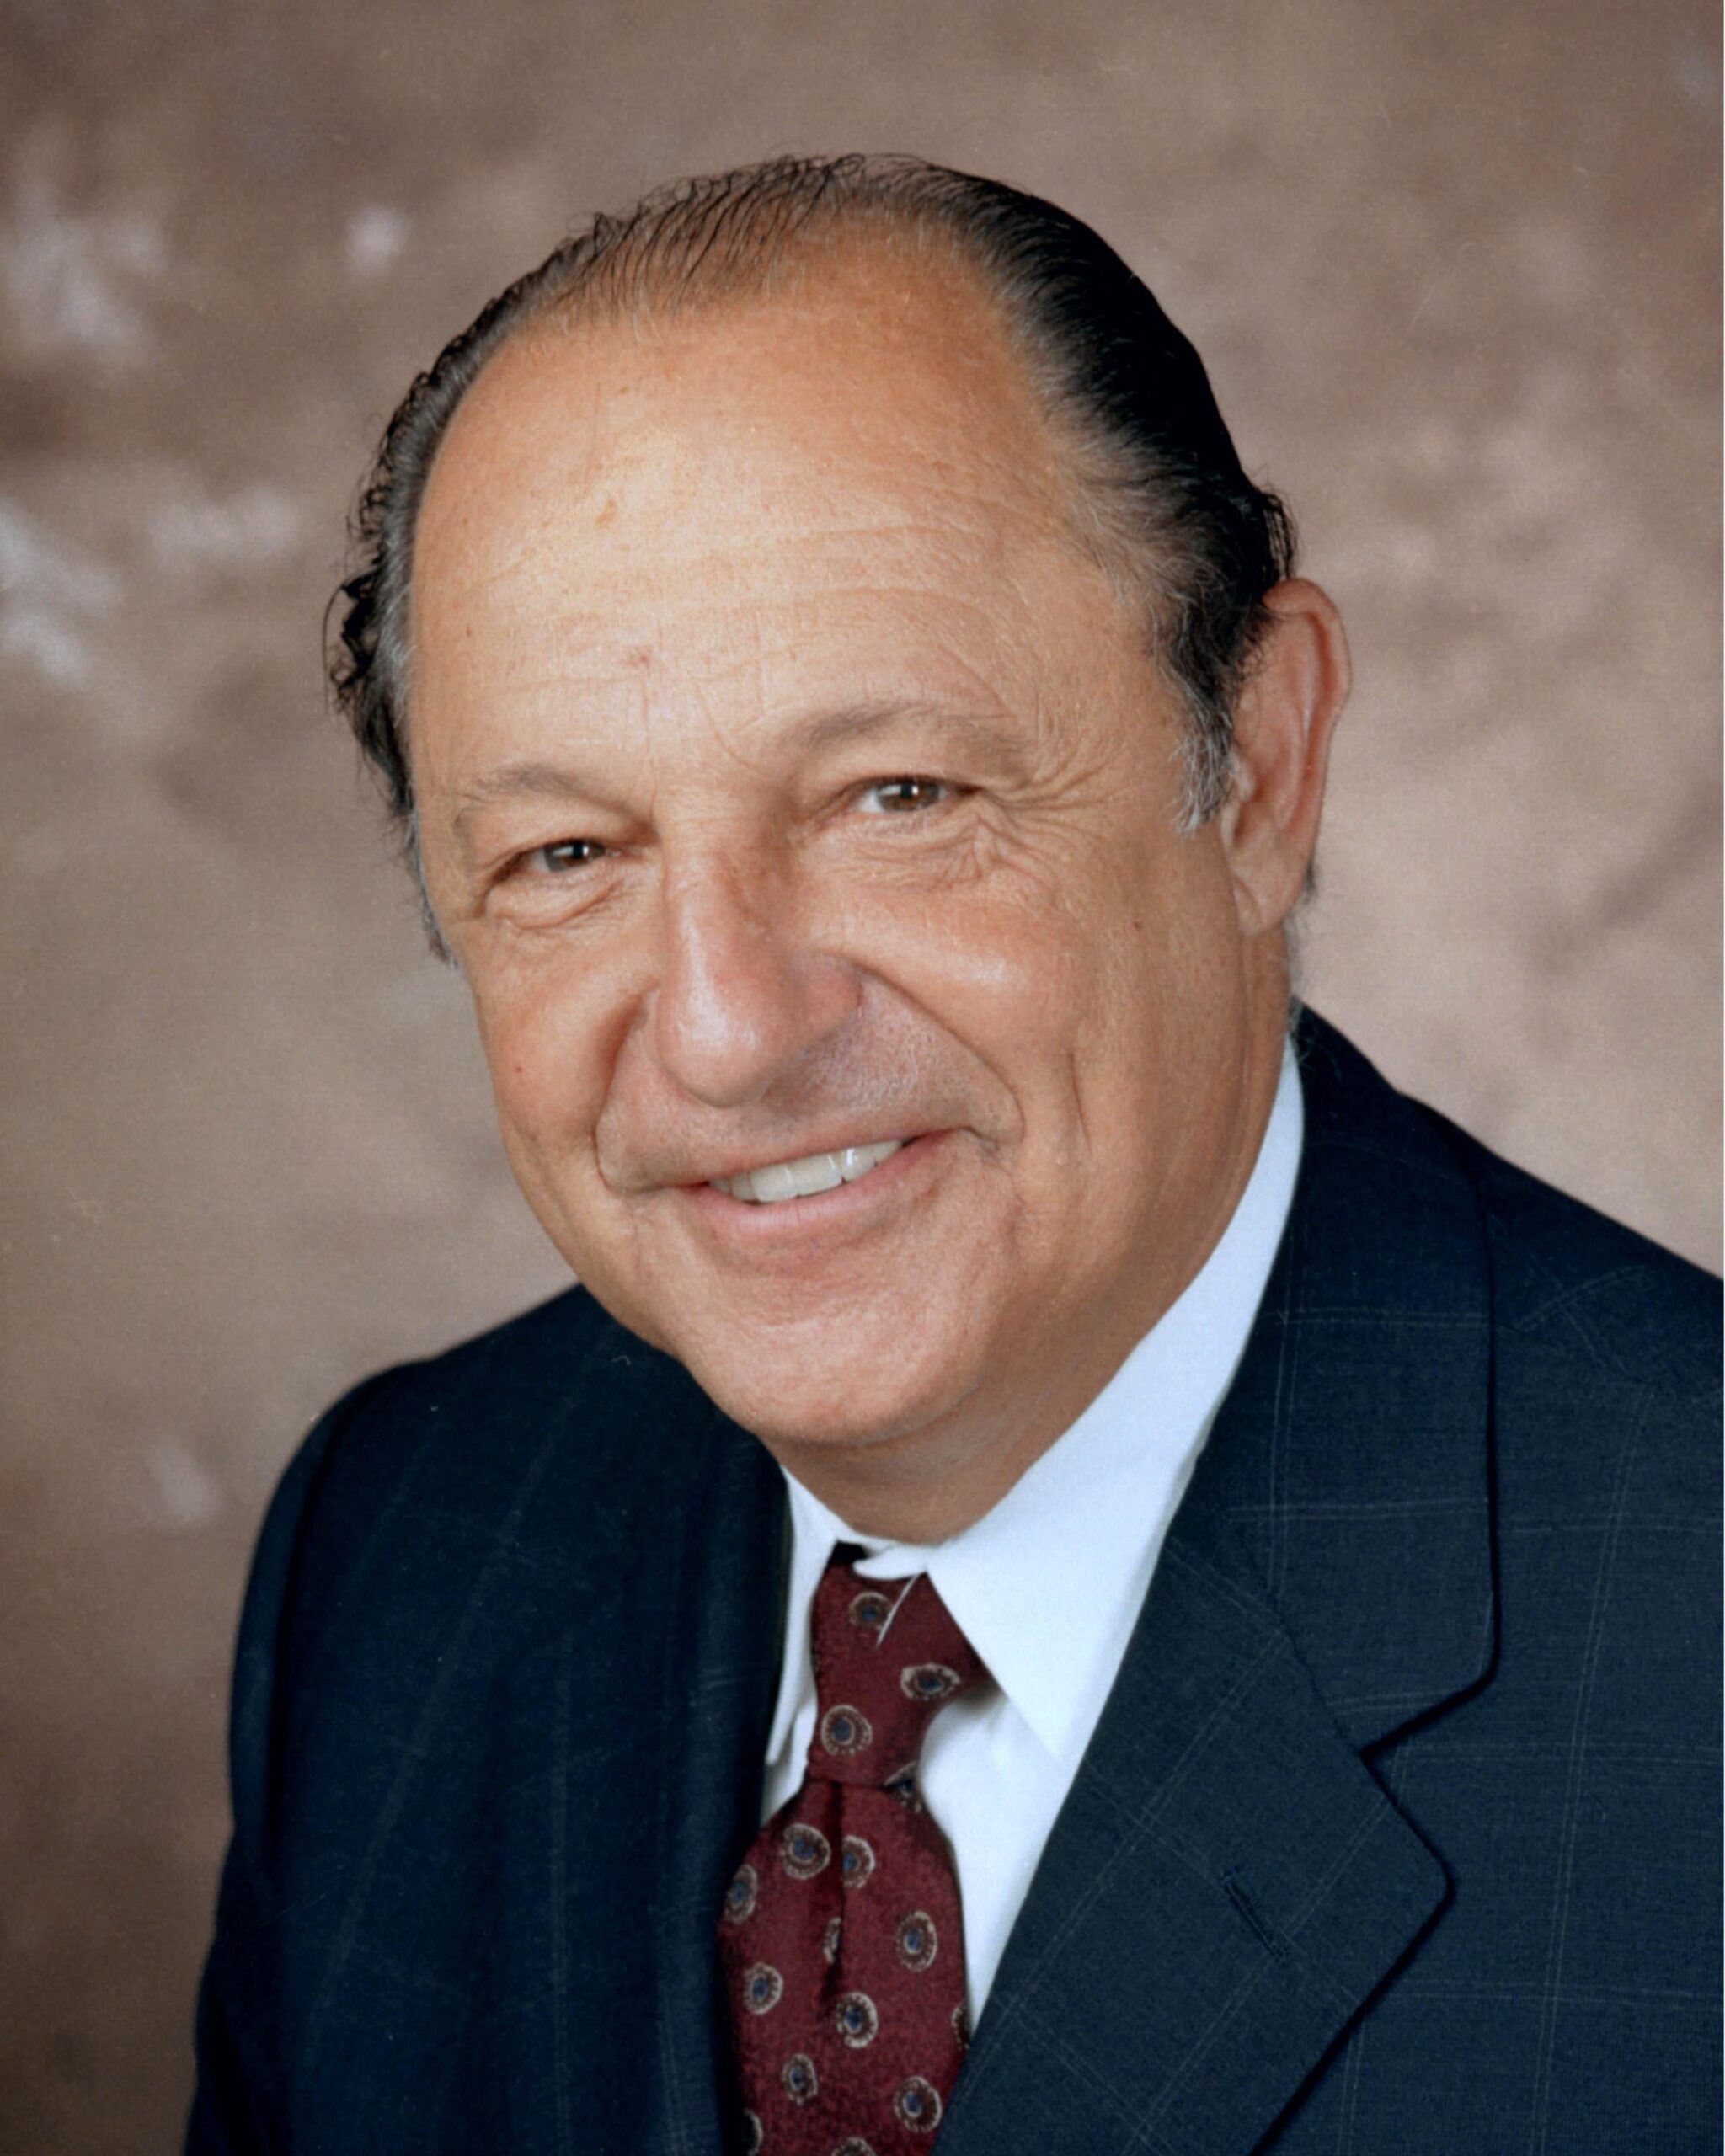 Ralph A. DeFronzo